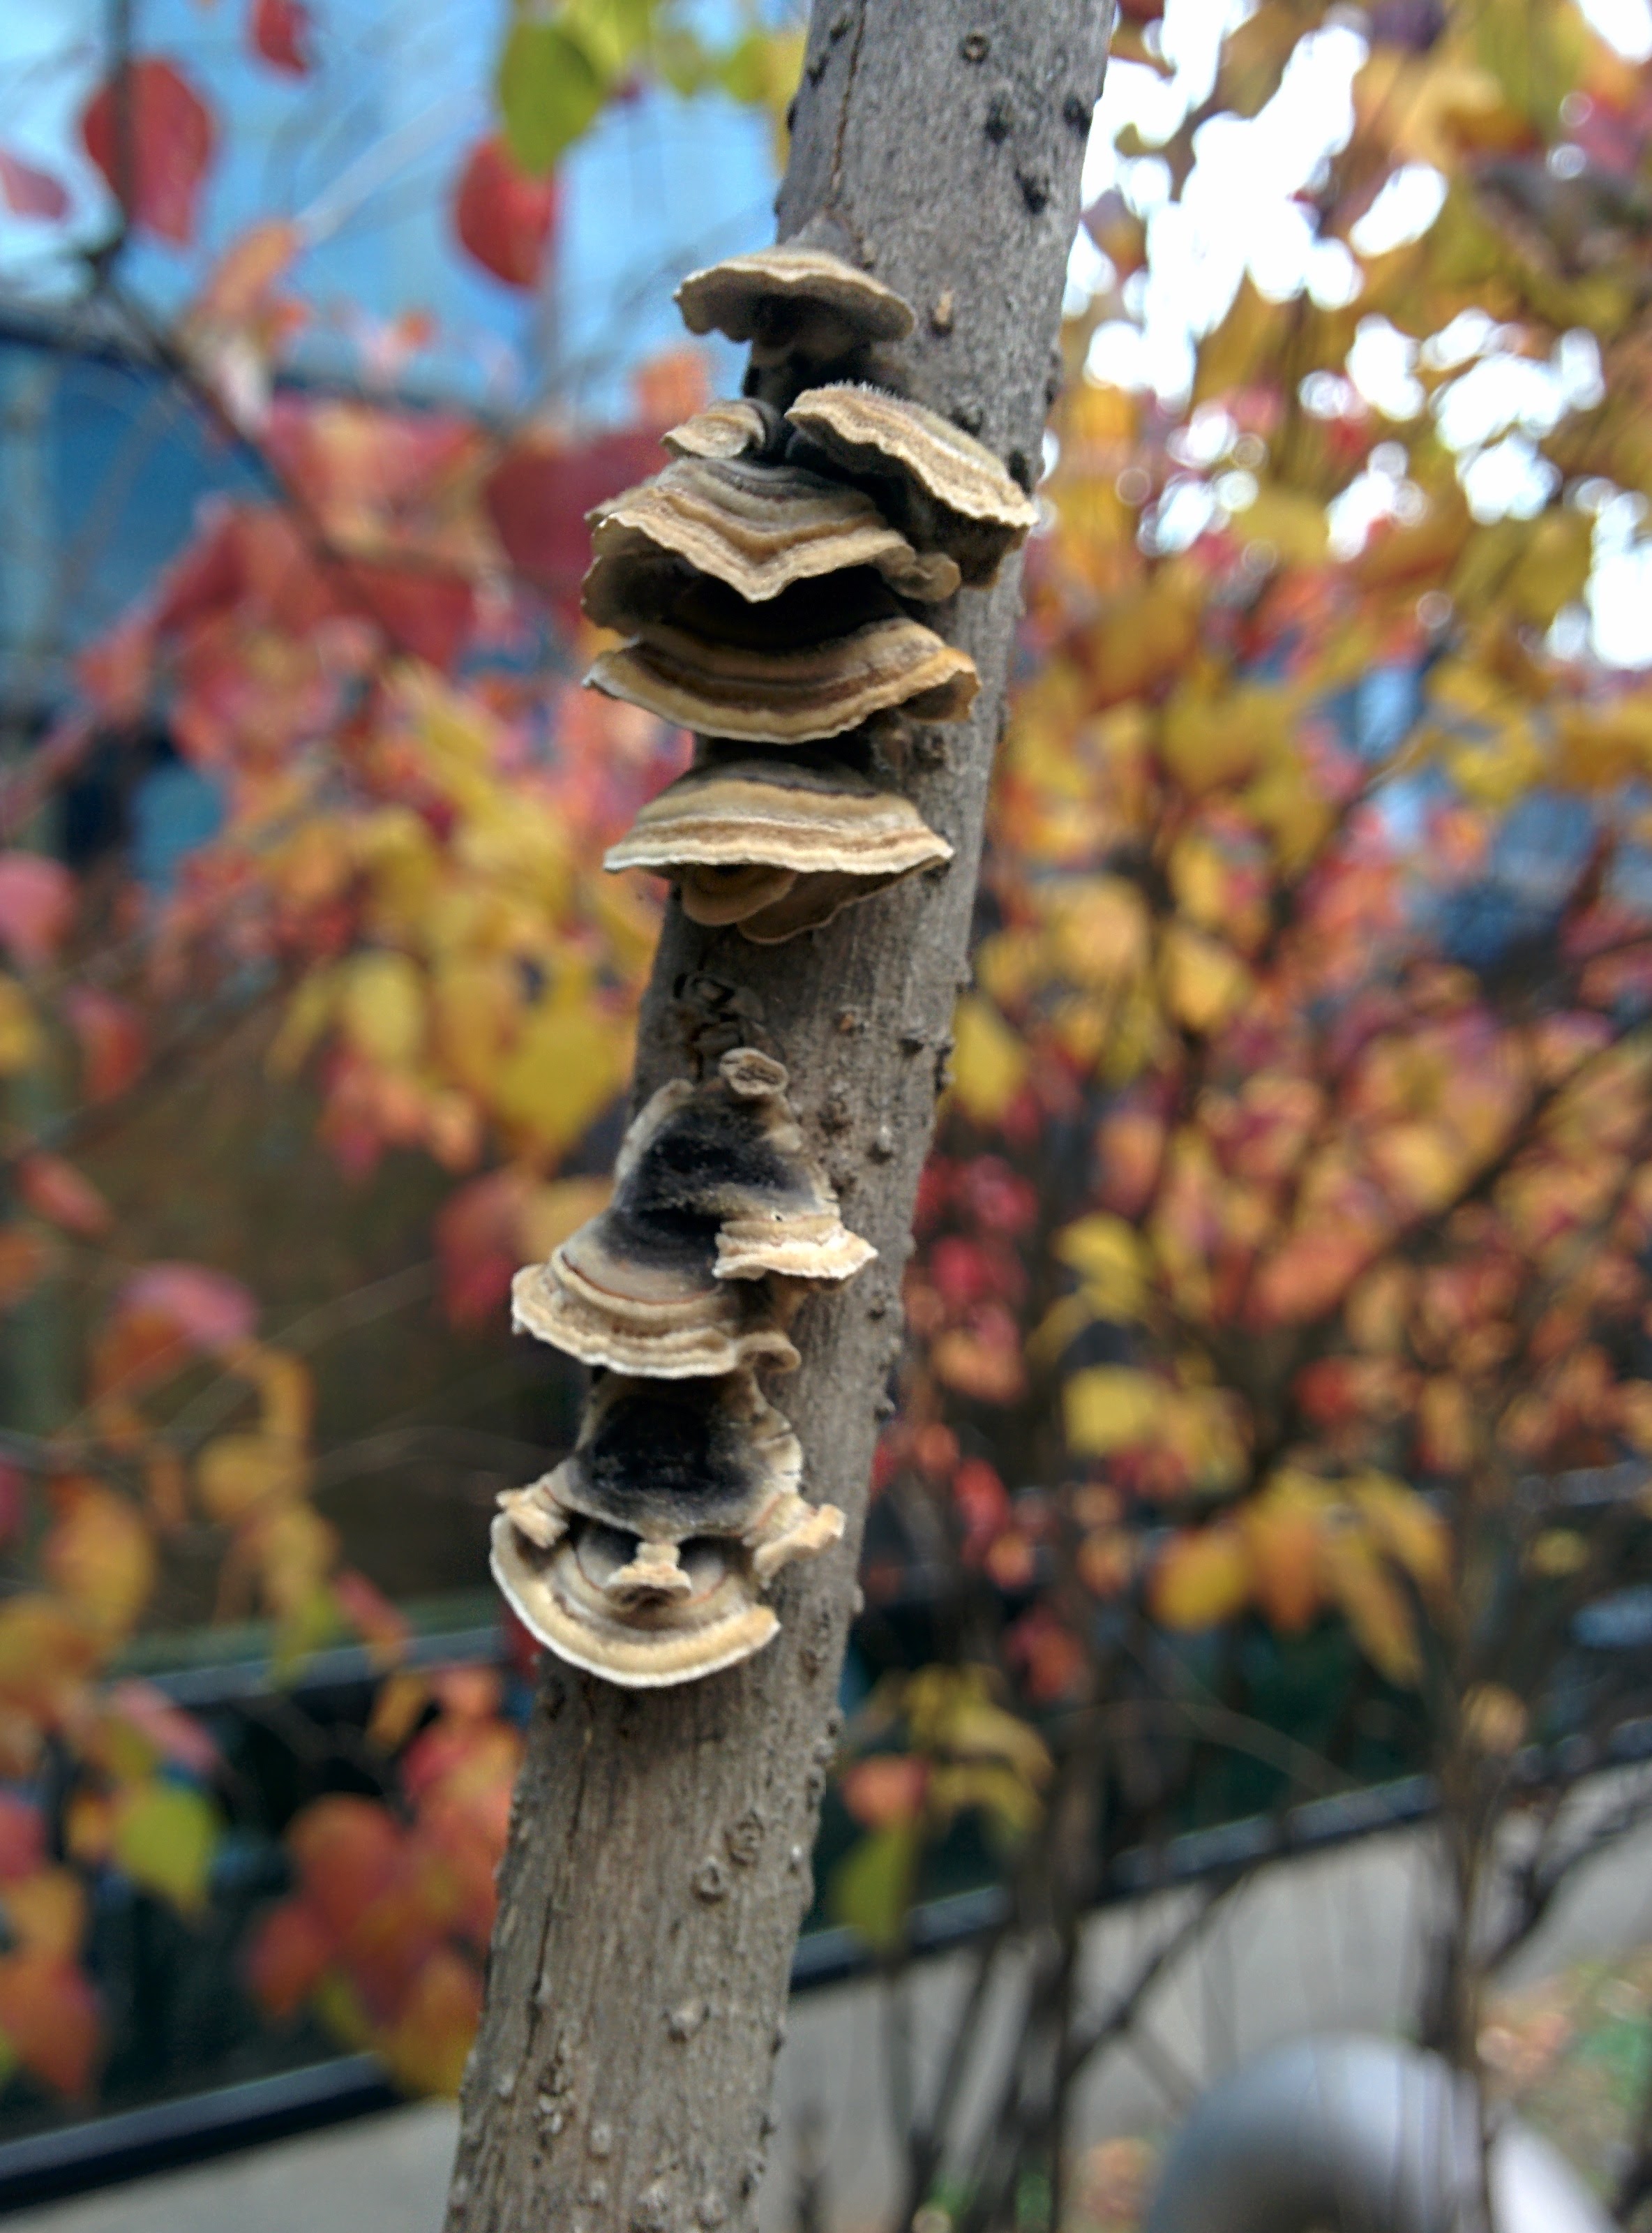 IMG_20151111_090024.jpg 라일락 나뭇가지에 붙어 자라는 버섯... 조개껍질버섯?